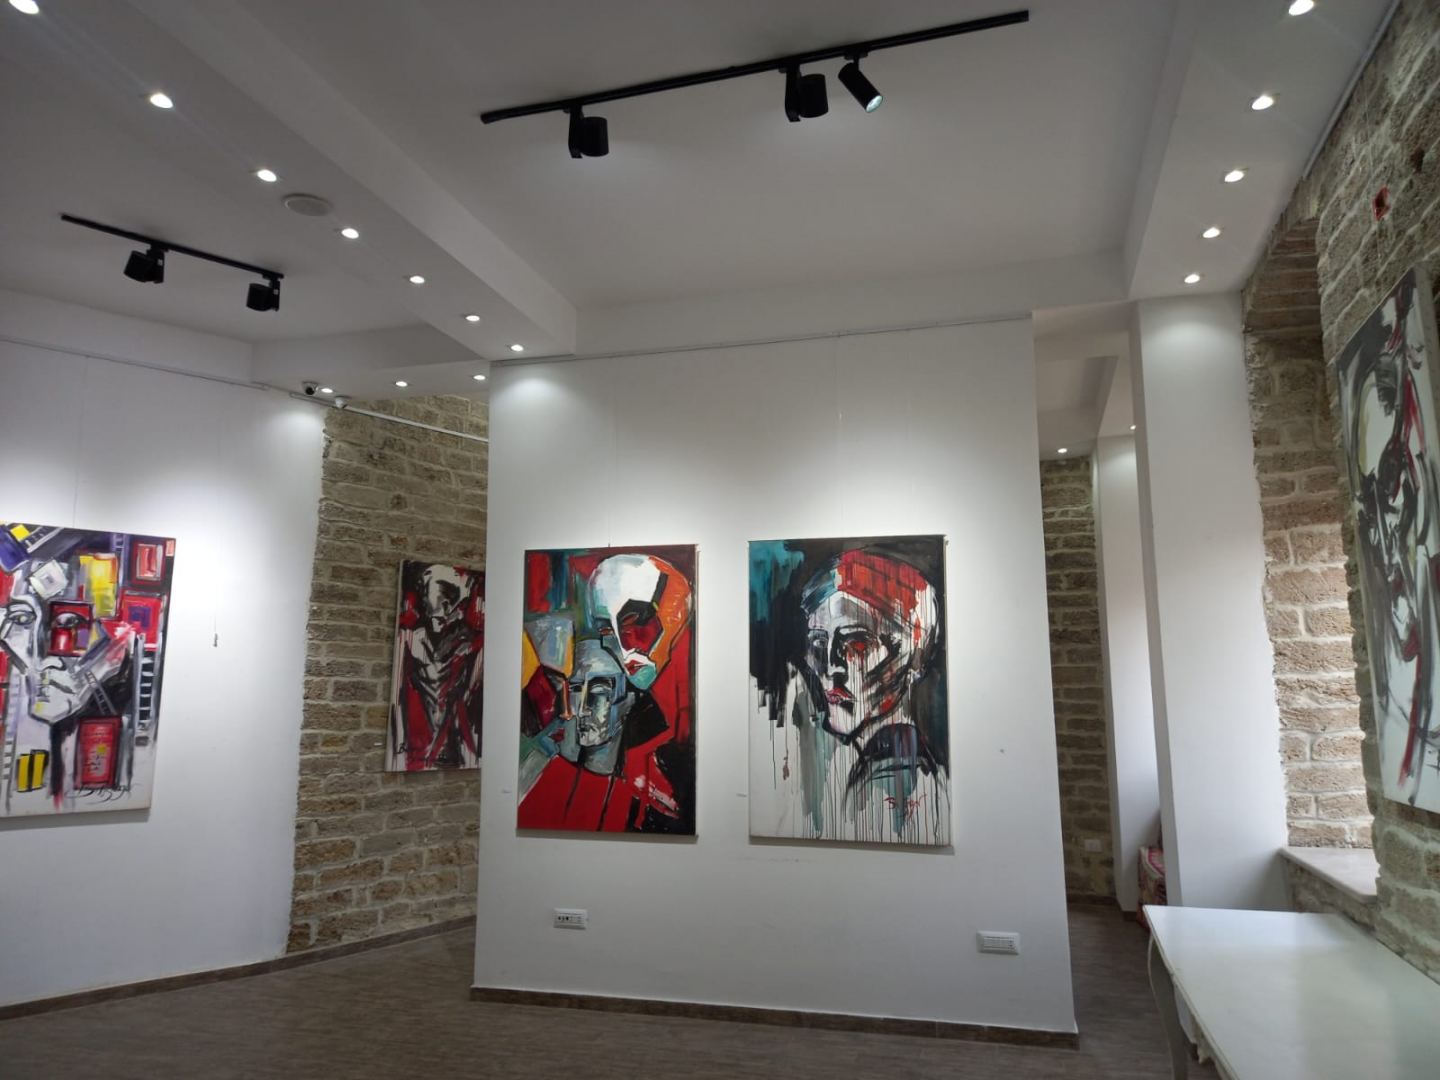 Ходжалинский геноцид в работах французского художника (ФОТО)